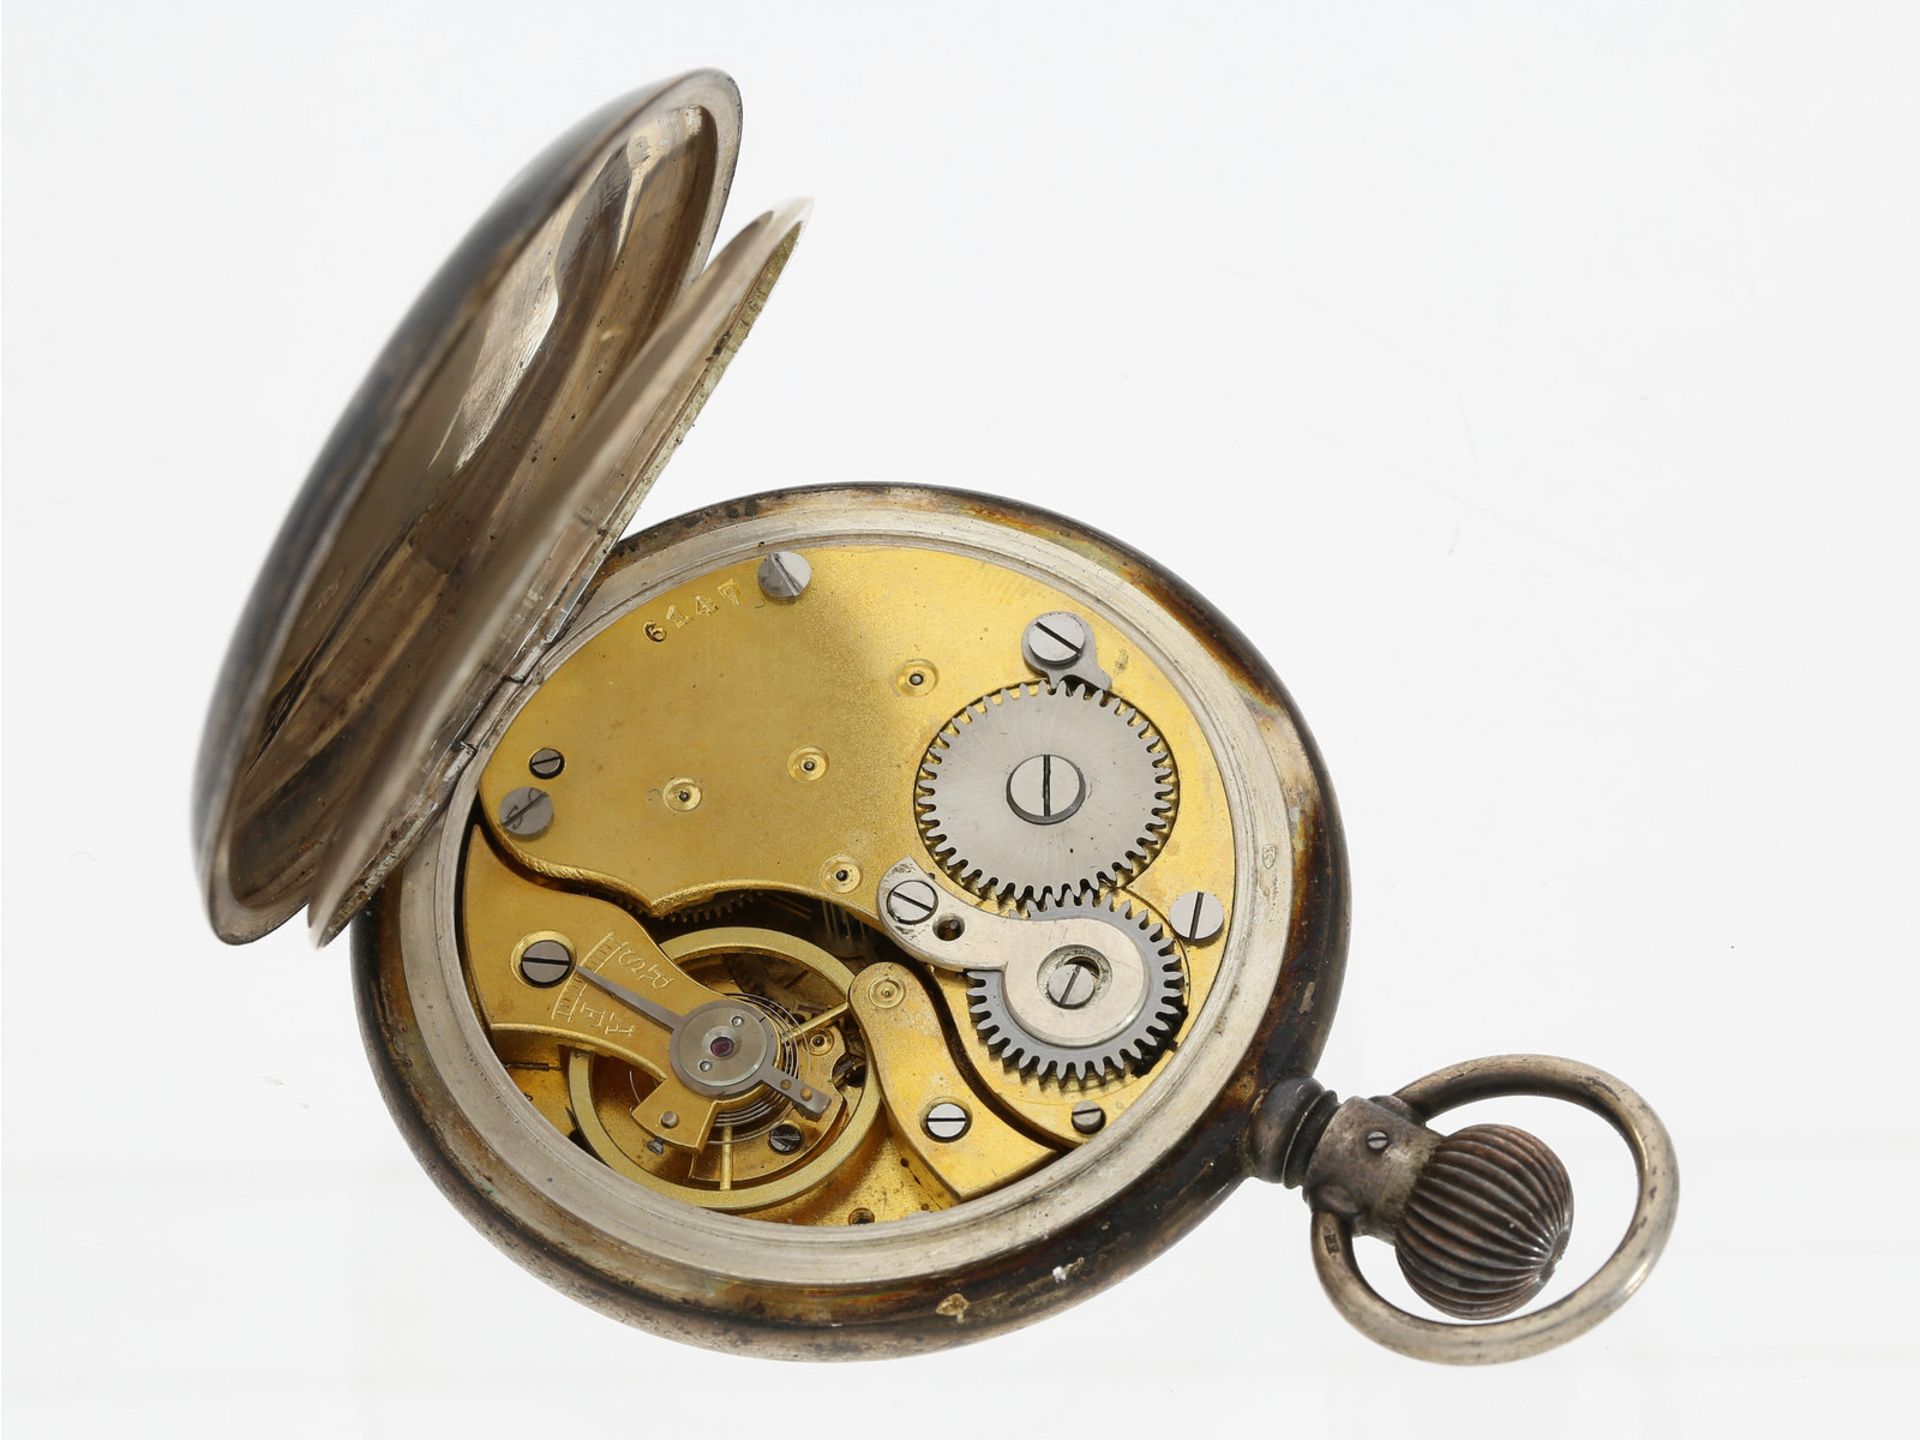 Taschenuhr: äußerst seltene "Auto" Tachymeter-Stoppuhr mit retrogradem Minutenzähler, Silbergehäuse, - Bild 2 aus 2